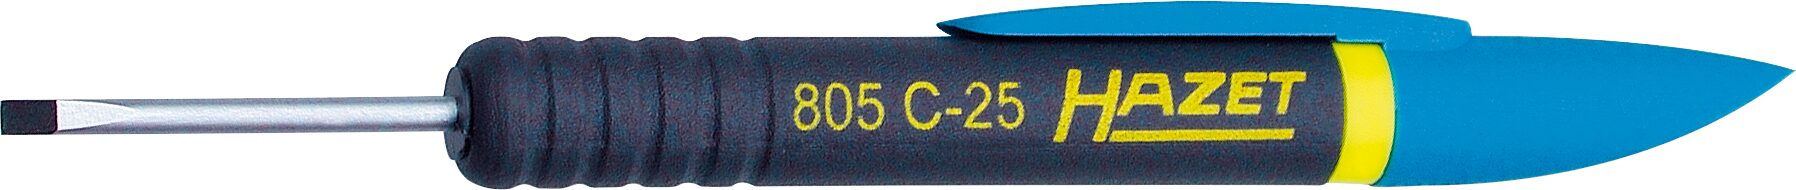 HAZET Clip-Schraubendreher 805C-25 ∙ Schlitz Profil ∙ 0.4 x 2.5 mm